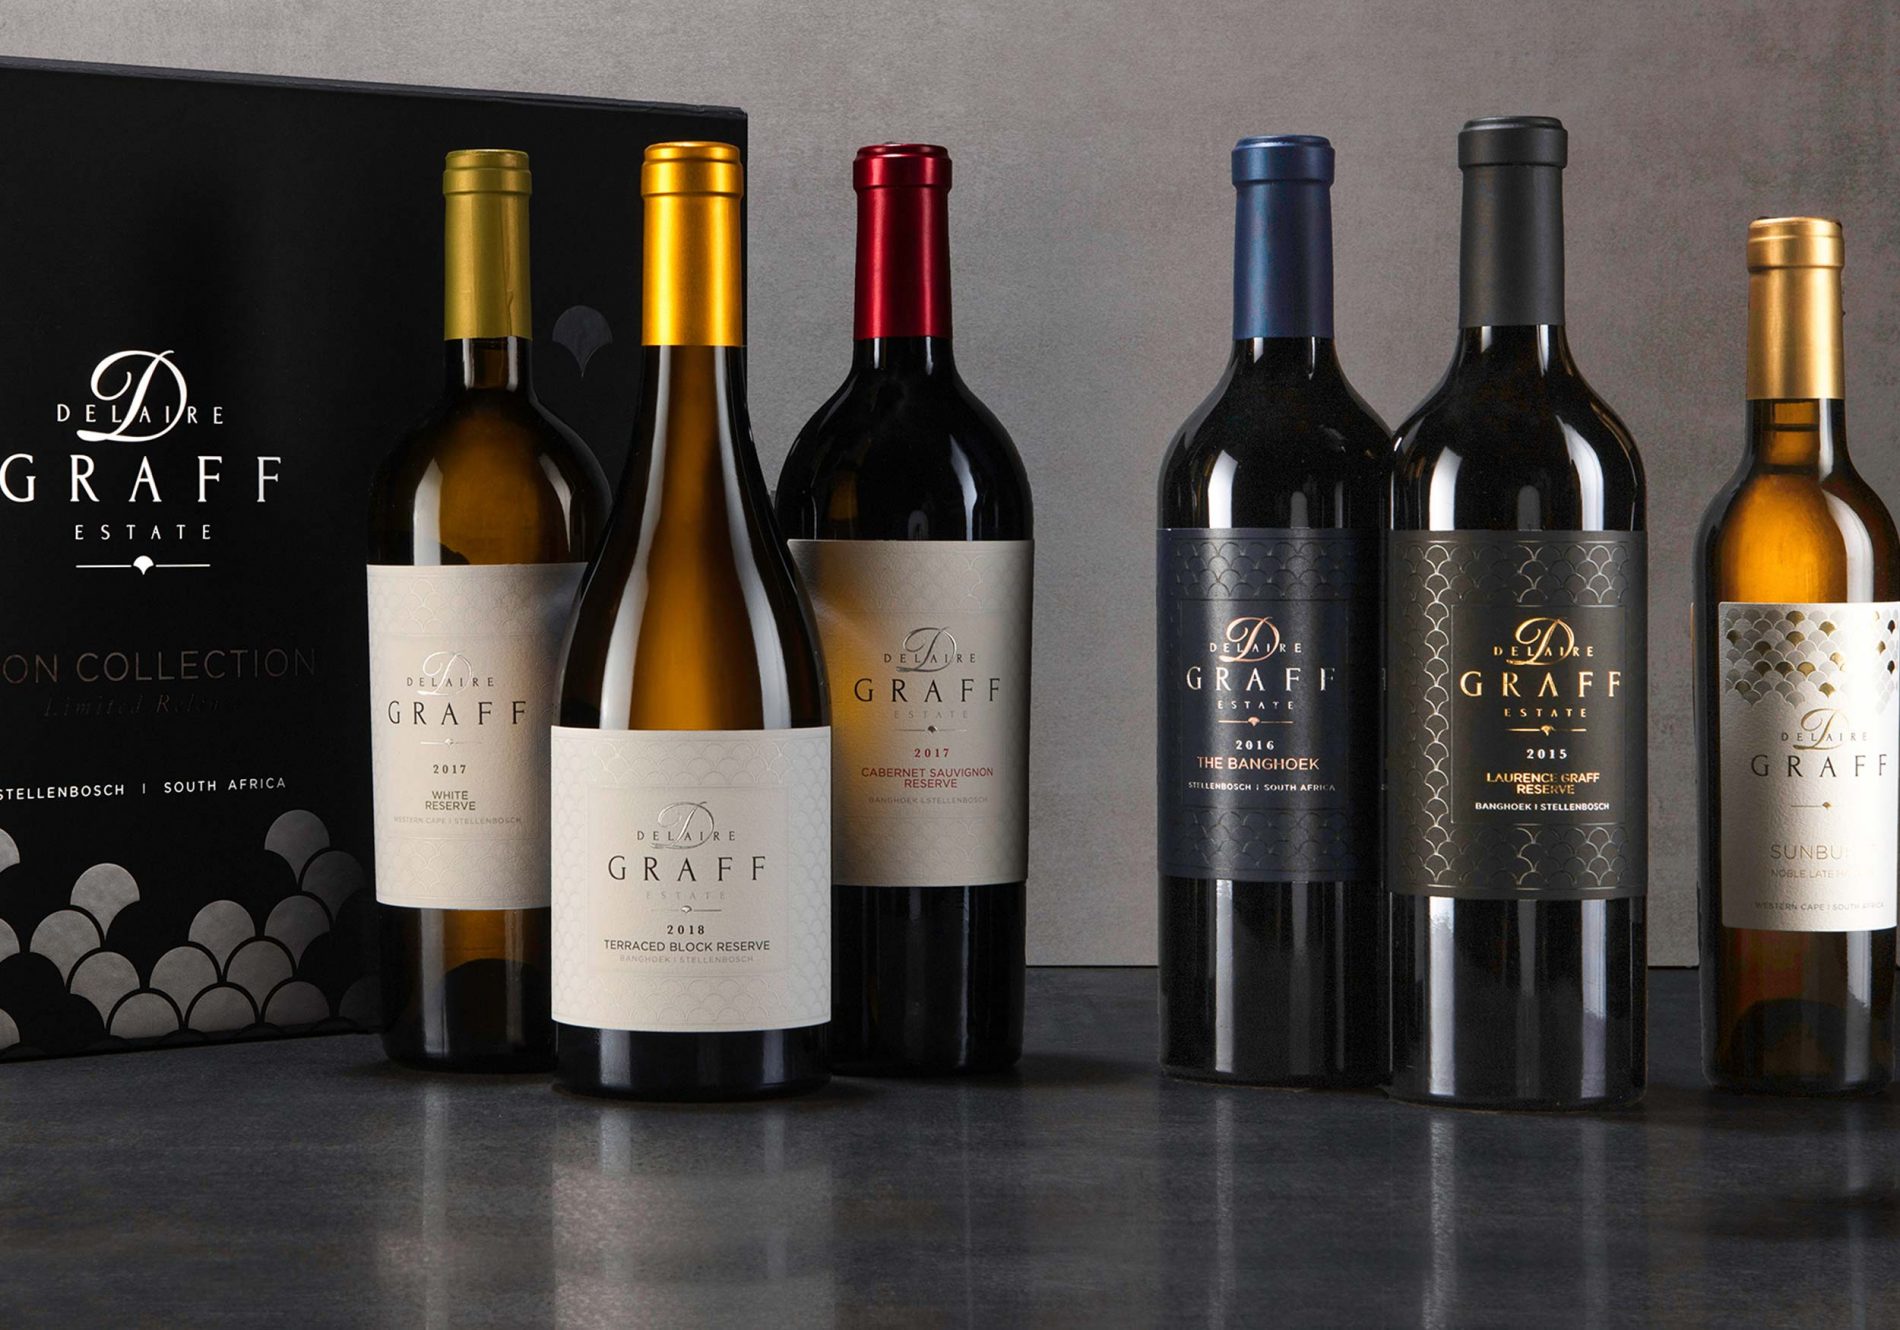 6 bottles of award-winning Delaire Graff Estate wine